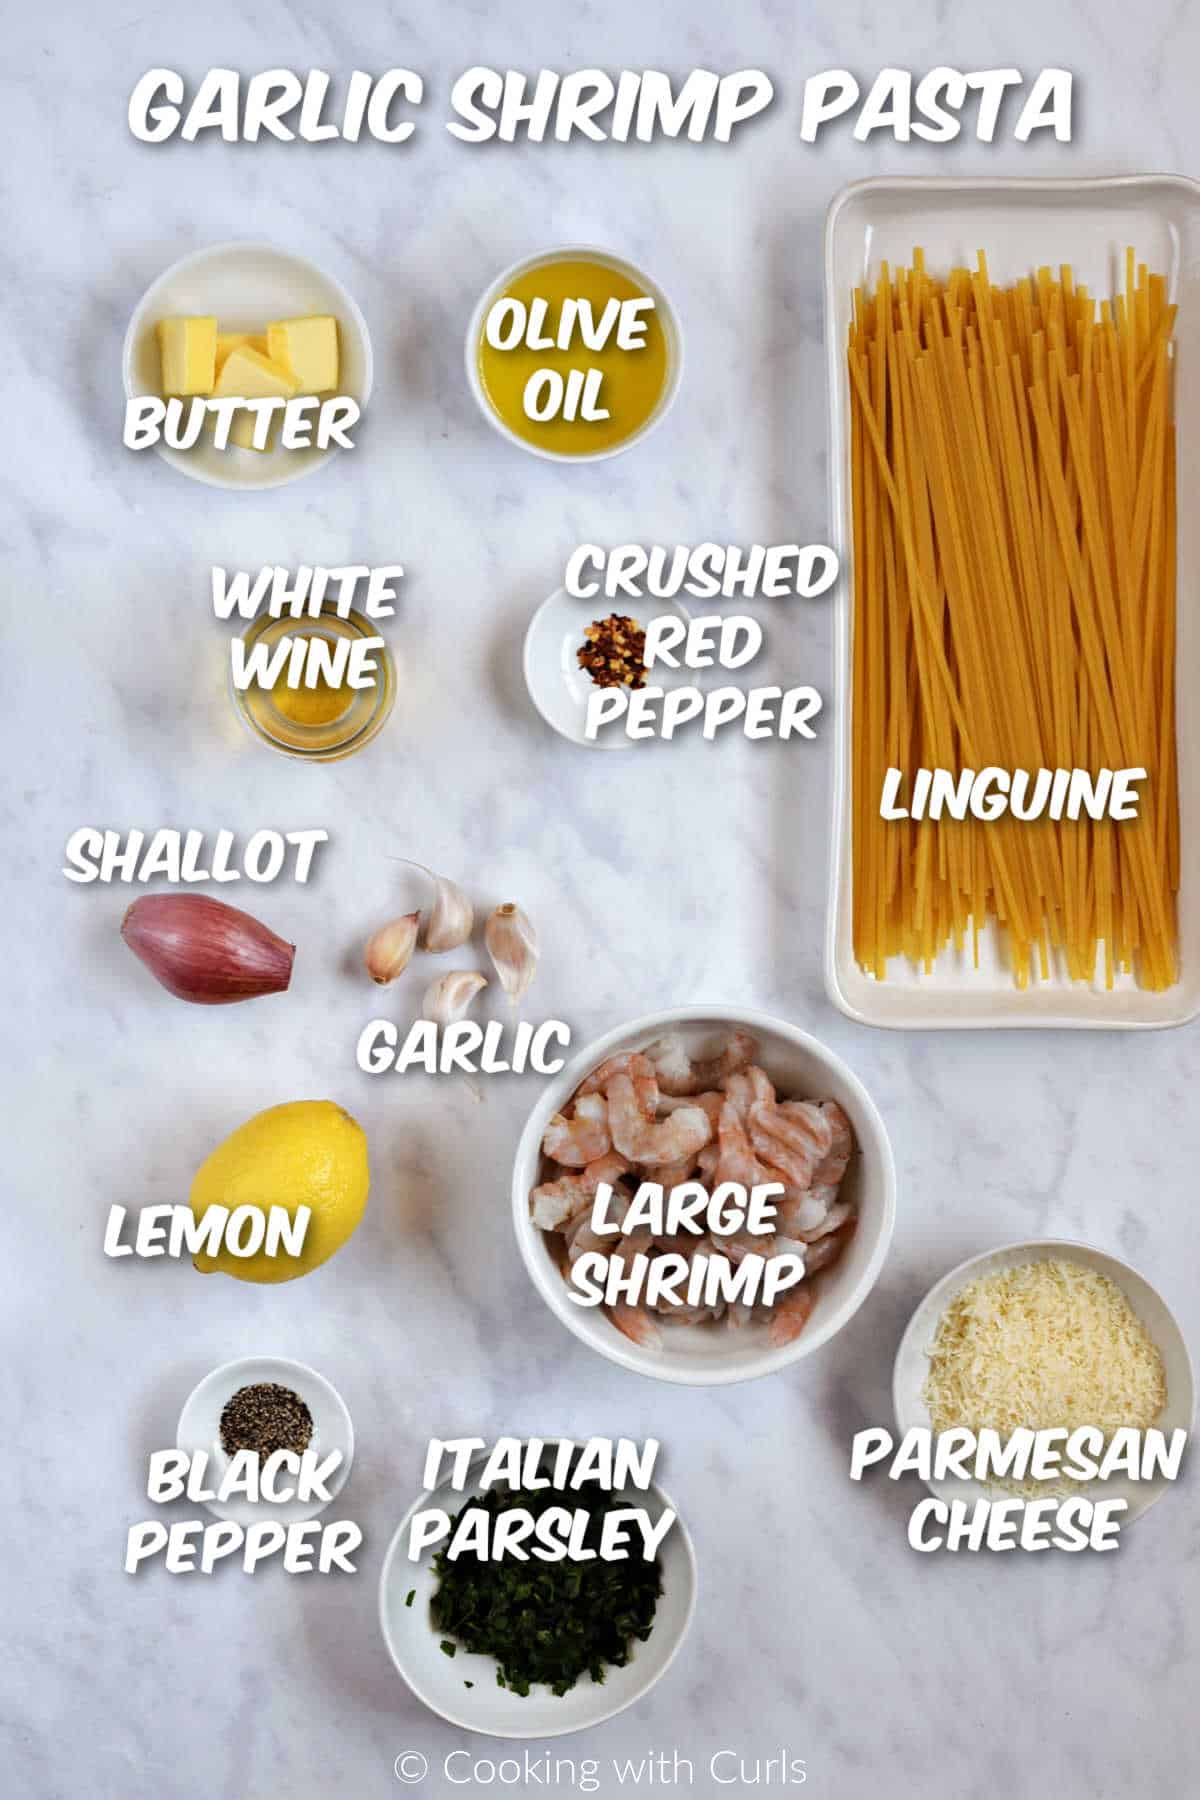 Ingredients needed to make garlic shrimp pasta recipe.